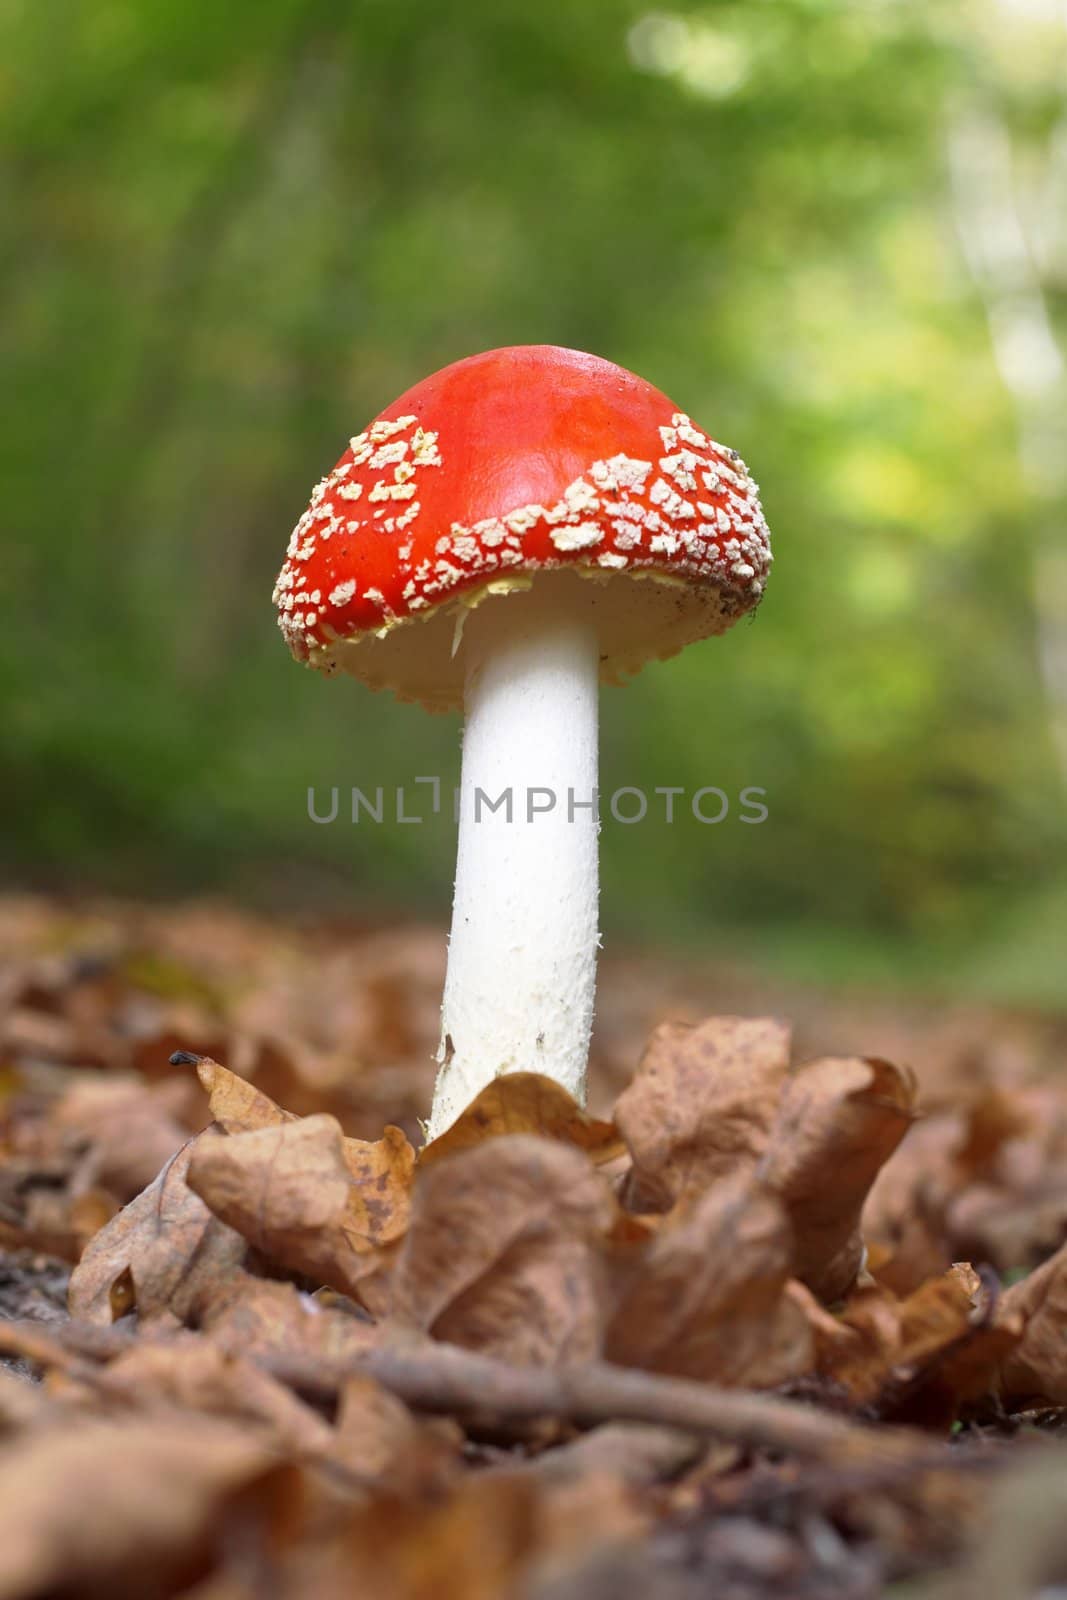 Poison-mushroom by velkol